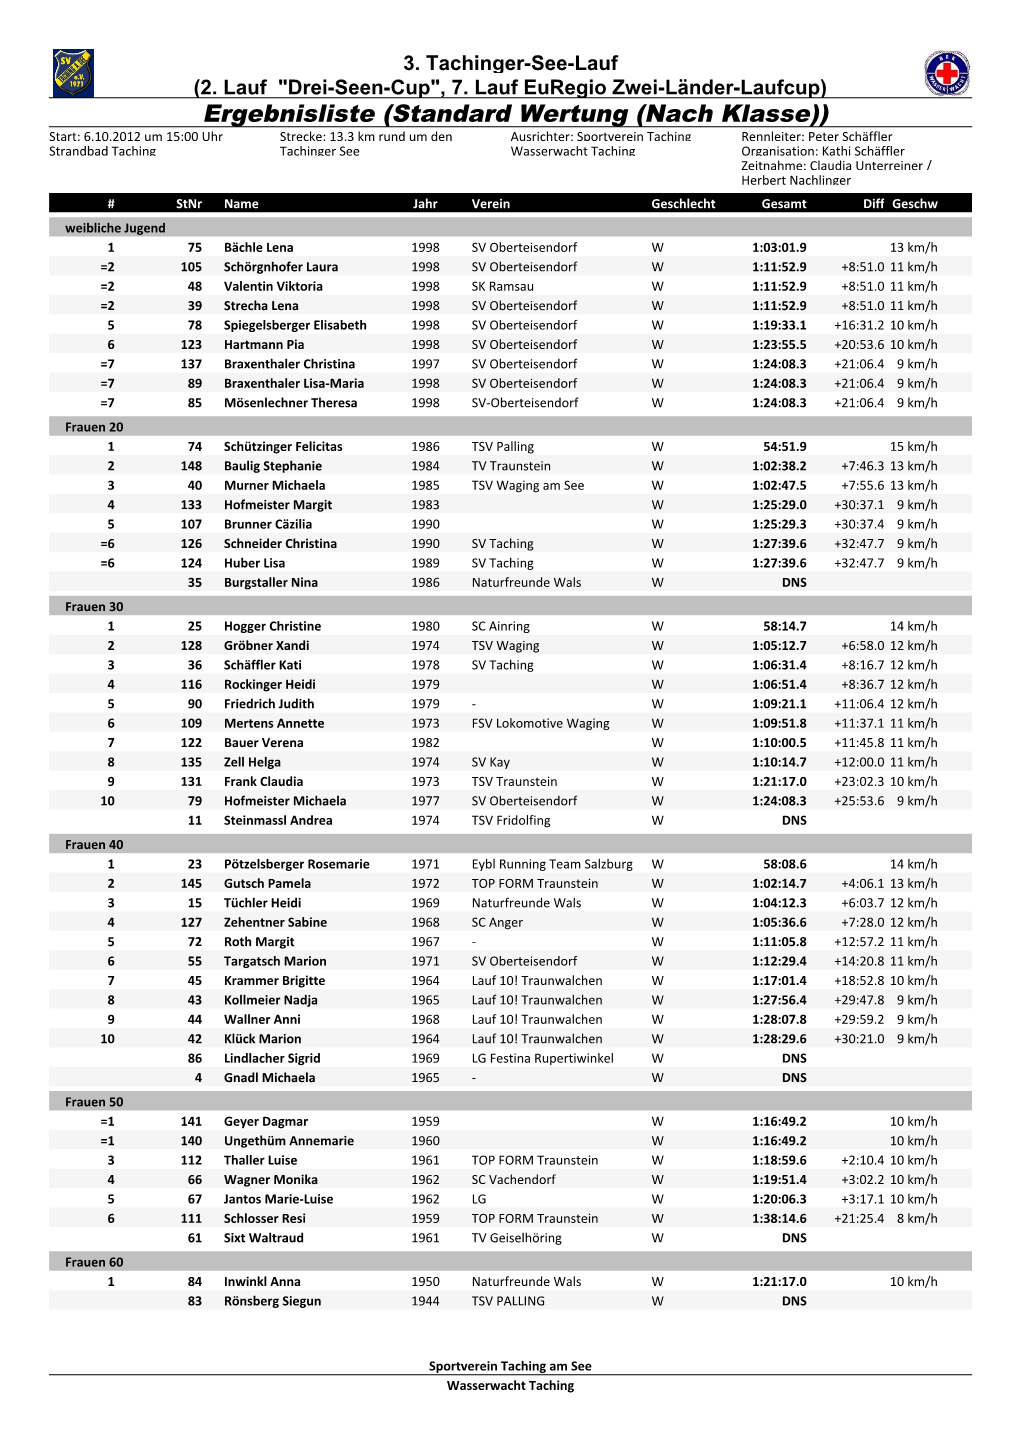 Tachinger See-Lauf 2012 Ergebnisse Nach